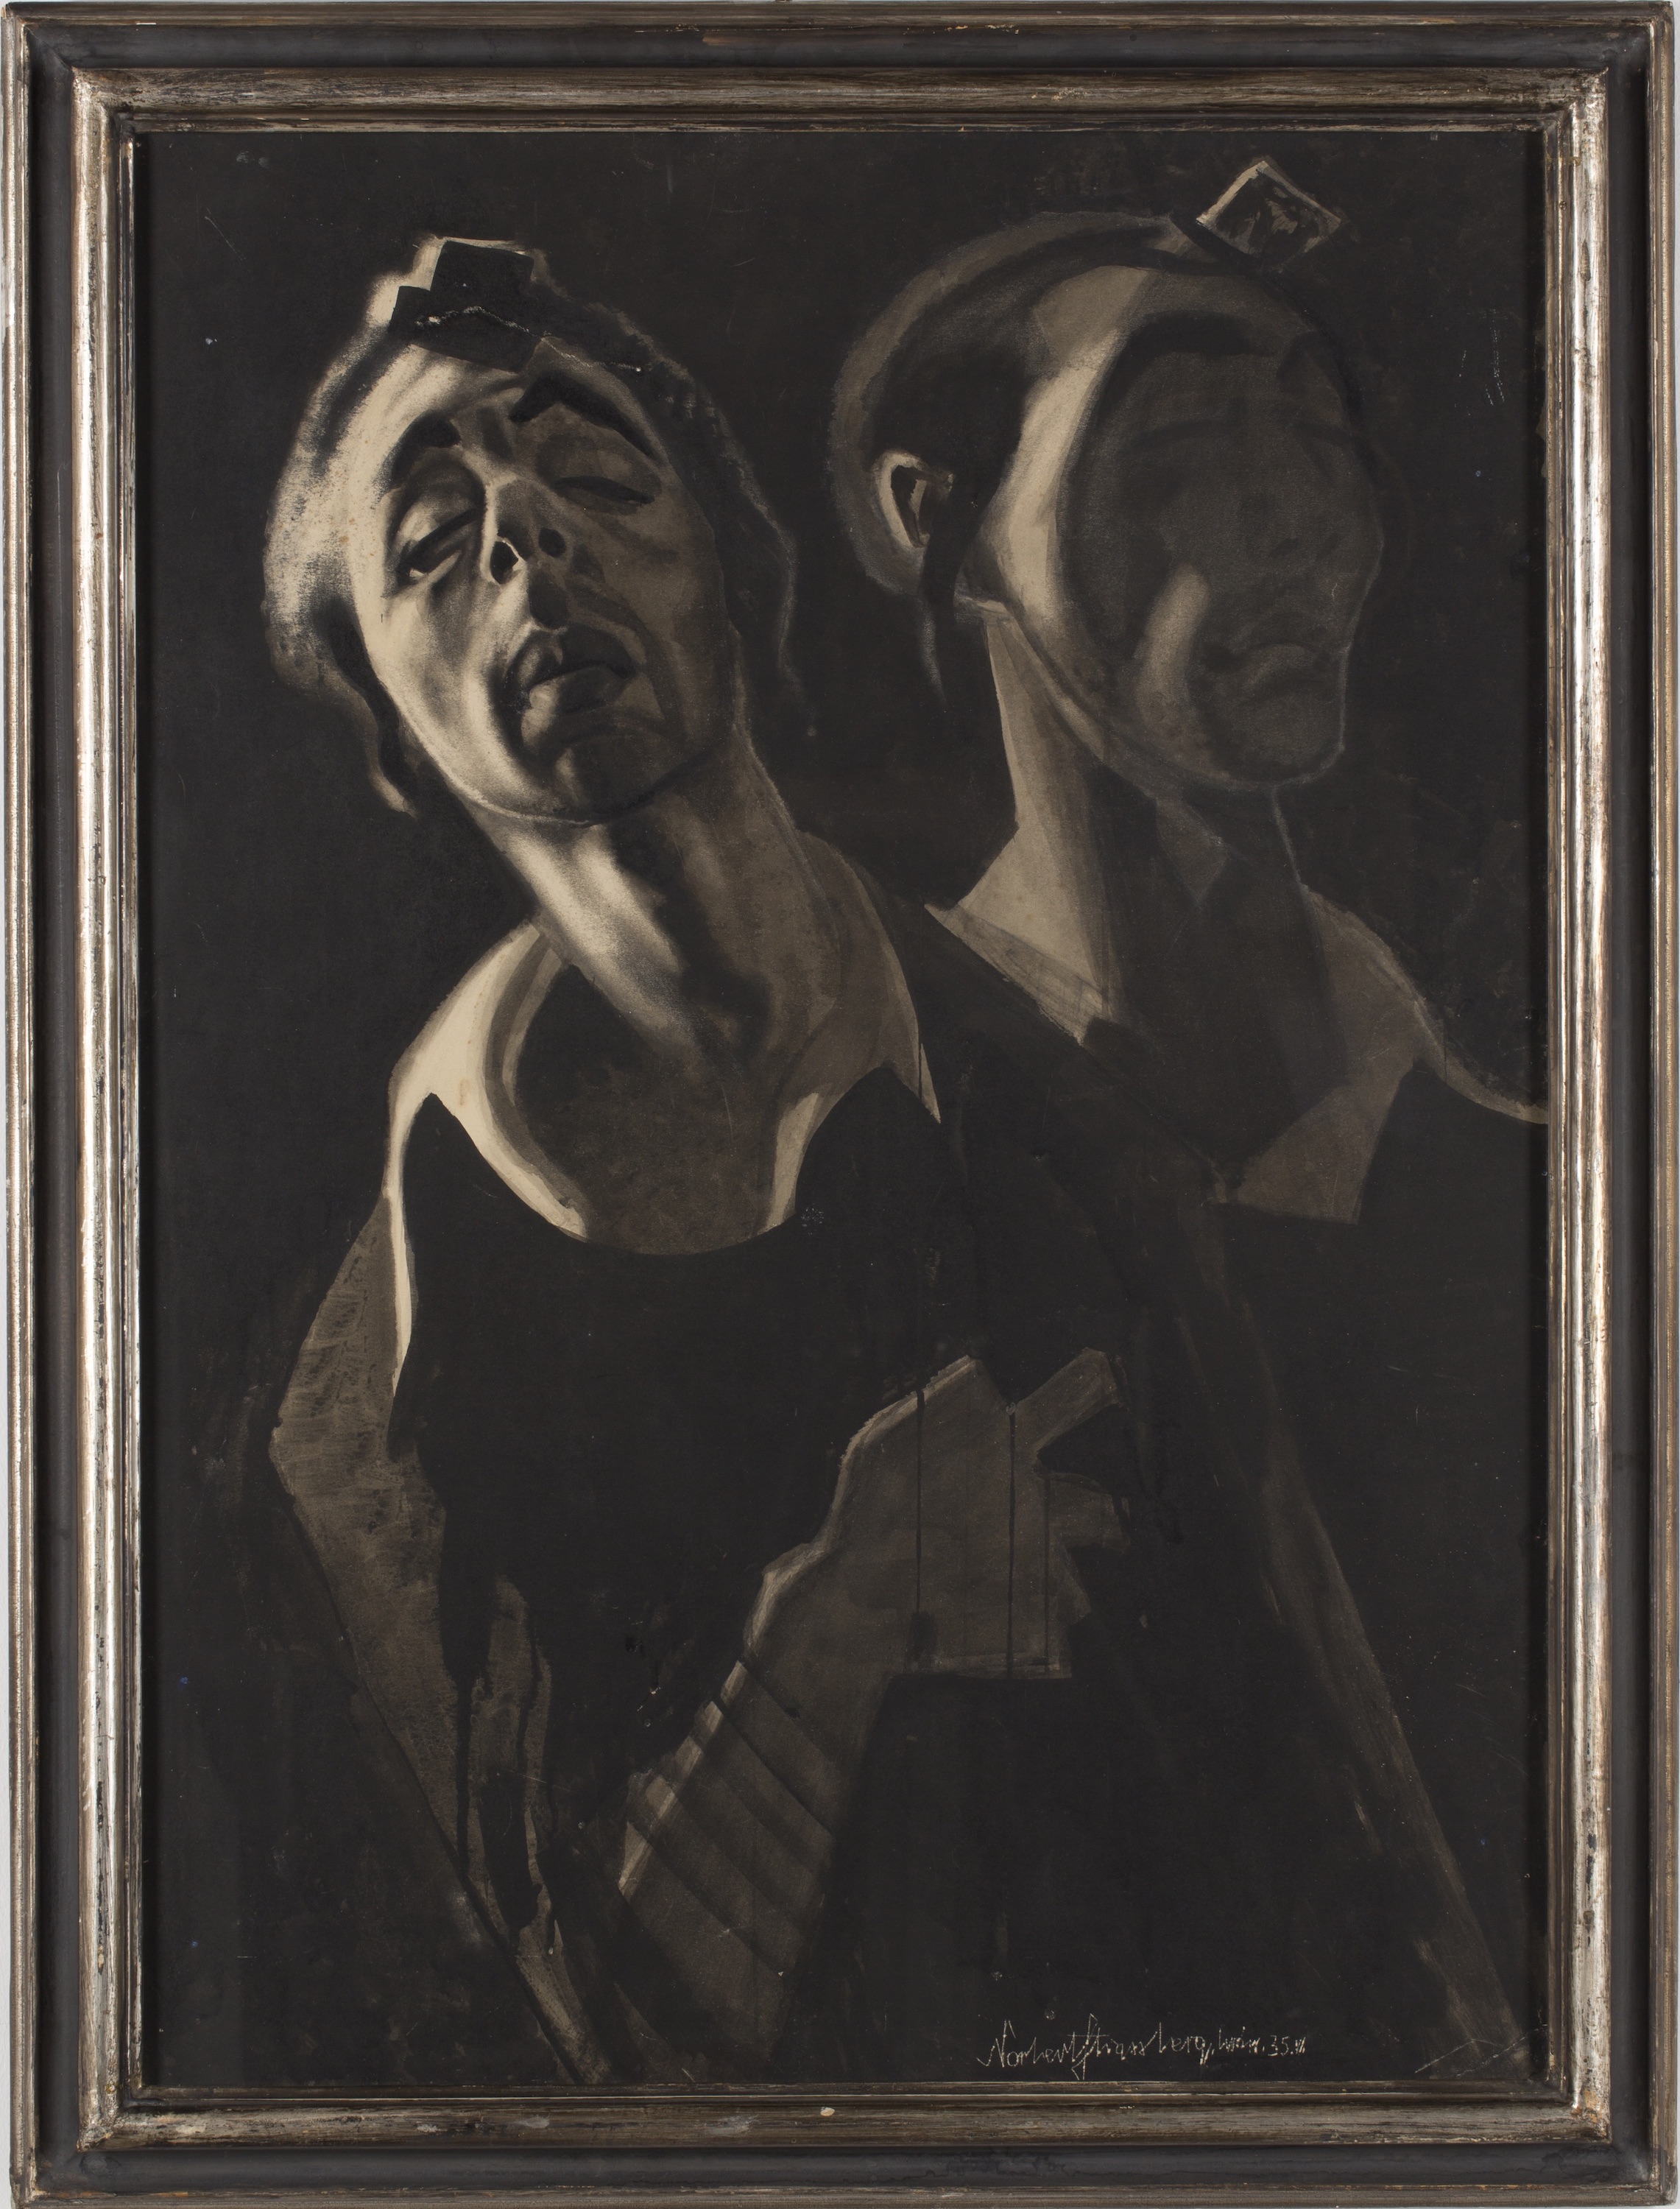 恍惚 (朝の祈り) by Norbert Strassberg - 1935年 - 85 x 62 cm 